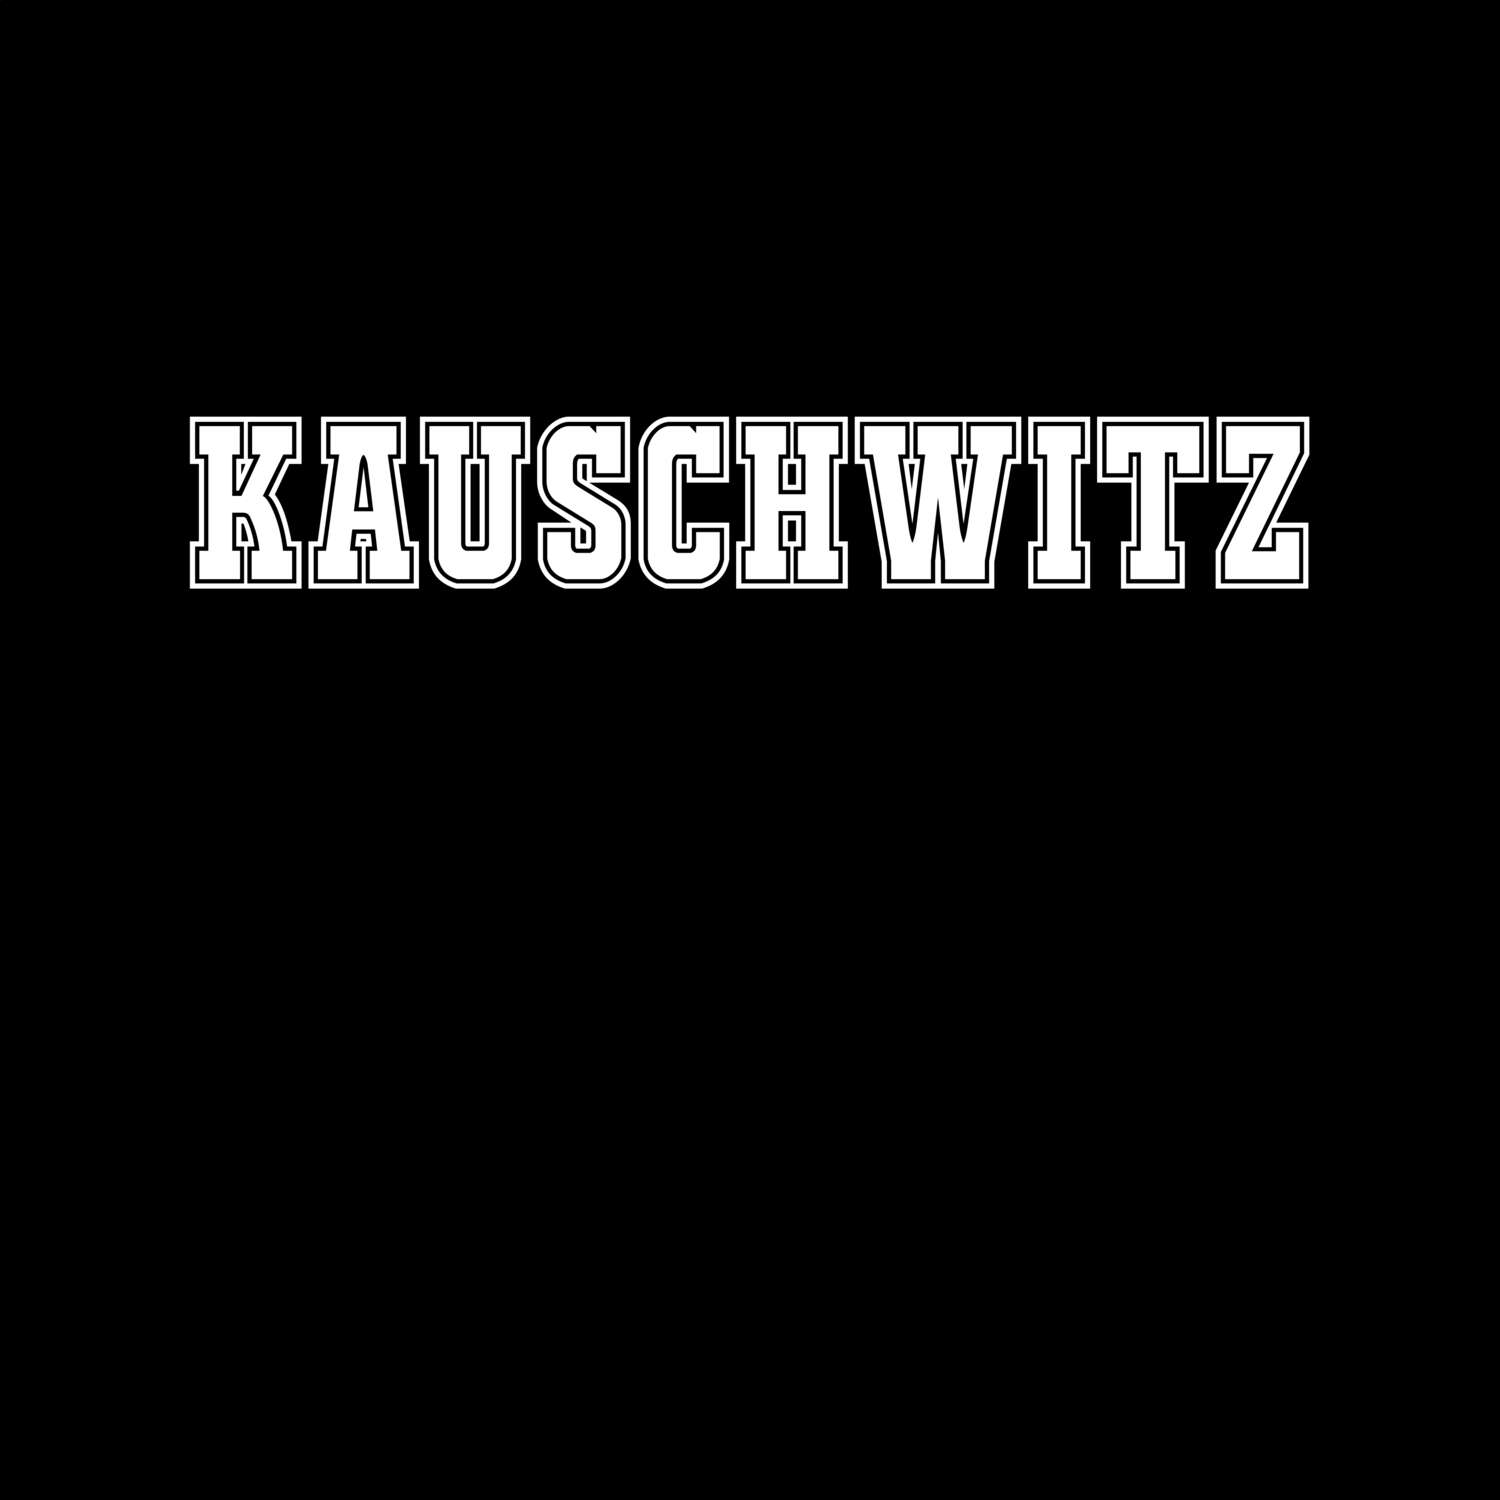 Kauschwitz T-Shirt »Classic«